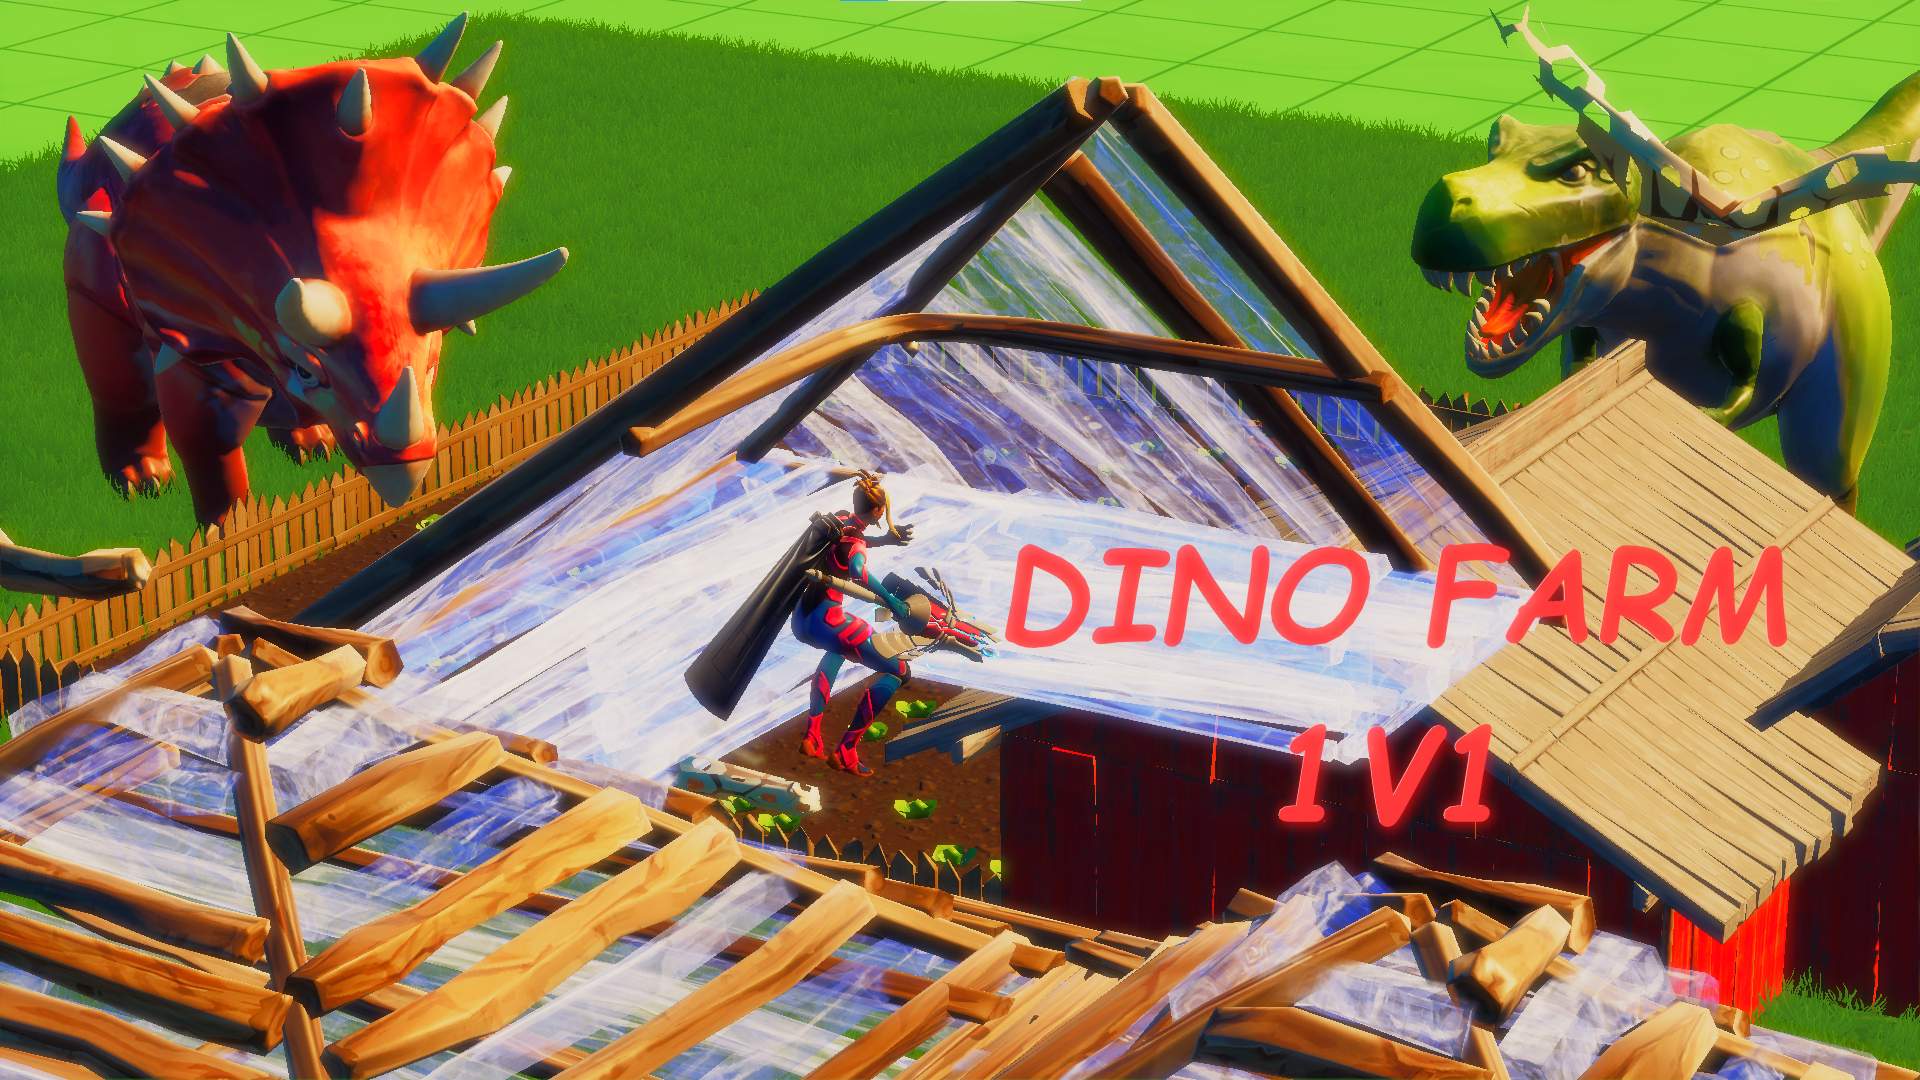 Dino Farm 1v1